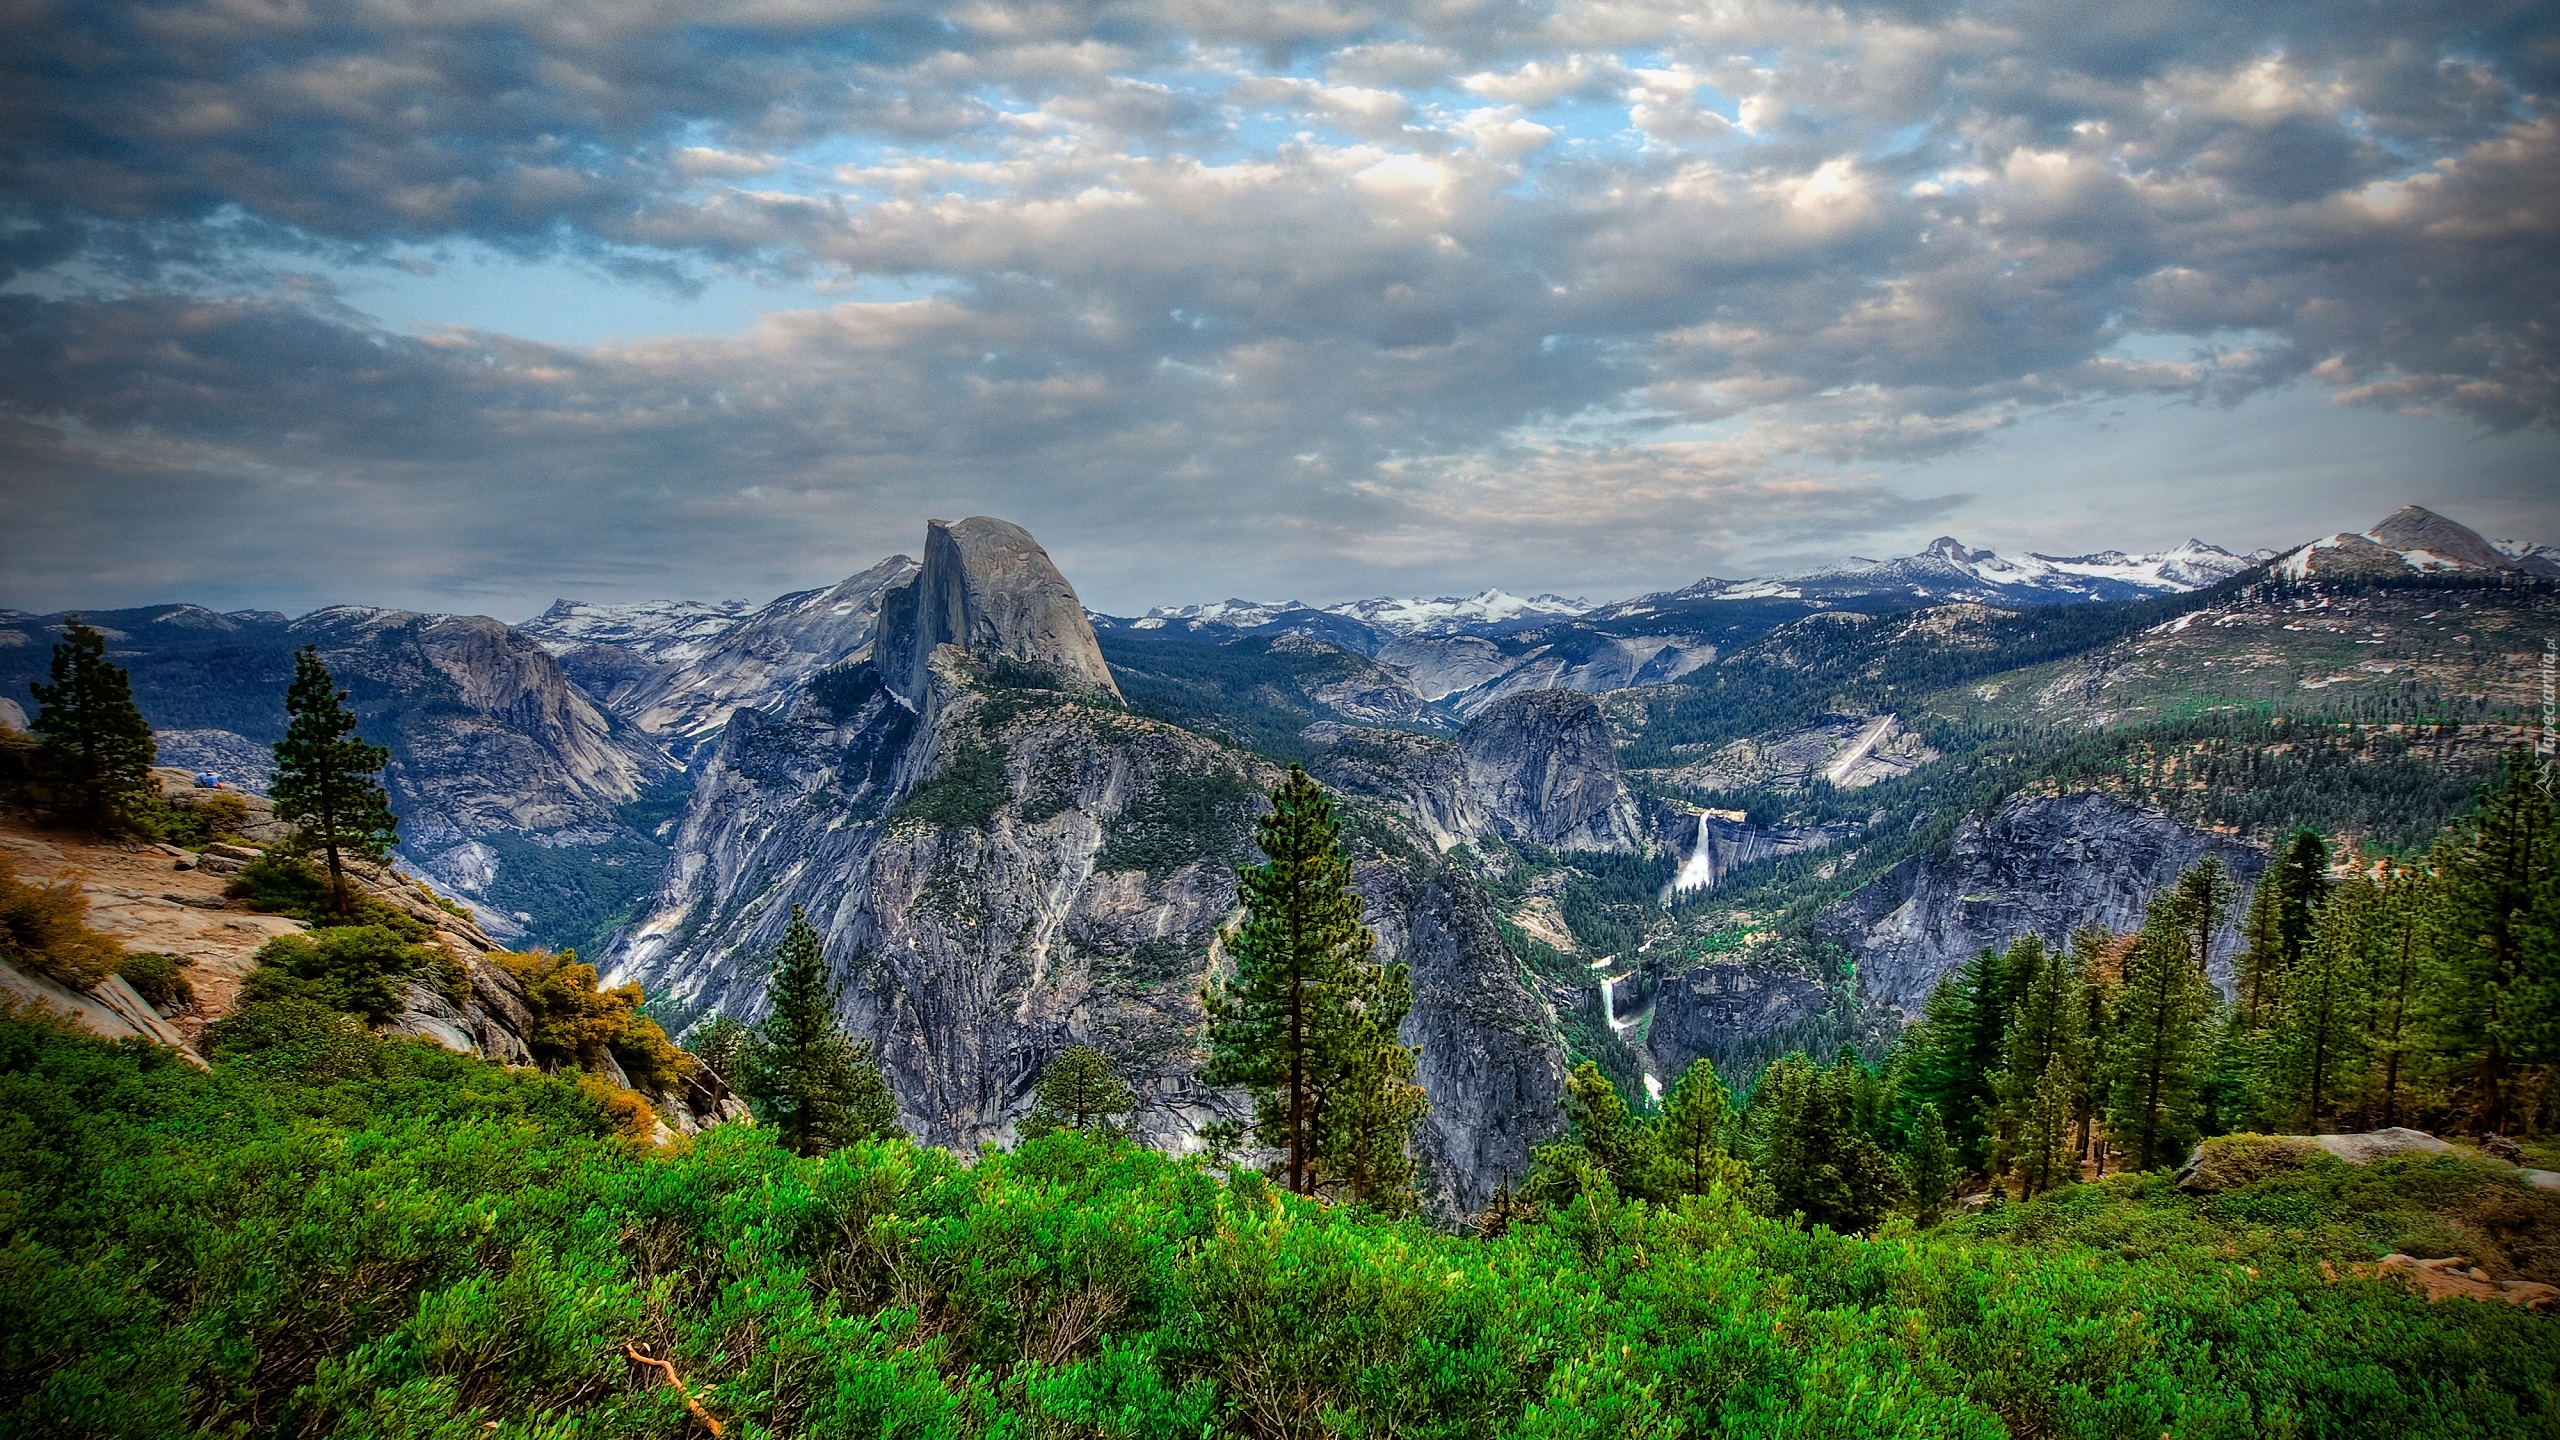 Stany Zjednoczone, Kalifornia, Park Narodowy Yosemite, Góry Sierra Nevada, Roślinność, Drzewa, Krzewy, Ciemne, Chmury